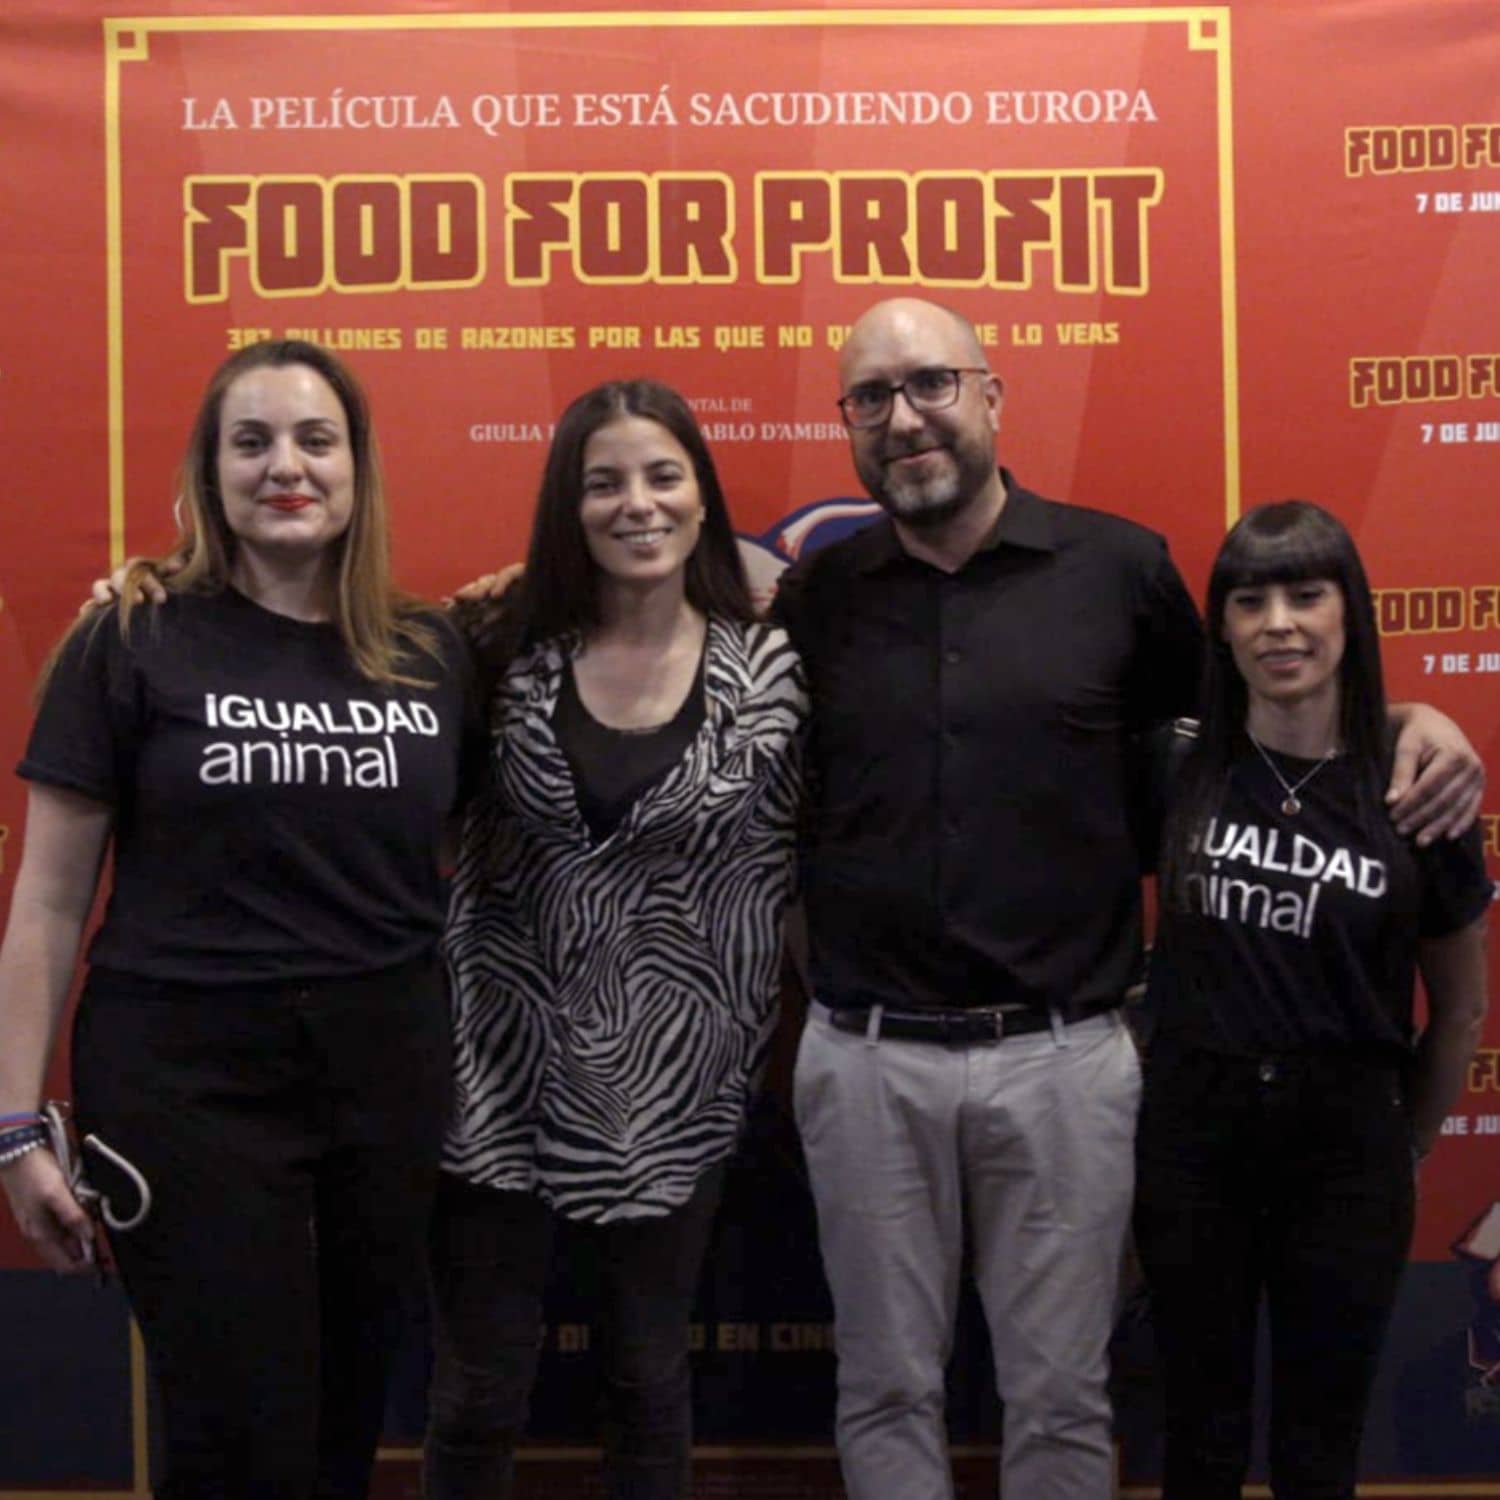 De izquierda a derecha: Lara Maraver, manager de operaciones en Igualdad Animal, Giulia Innocenzi, creadora del documental “Food for Profit, Javier Moreno, cofundador de Igualdad Animal y Beatriz Medina, coordinadora de campañas en Igualdad Animal durante la premiere de "Food for Profit" en Madrid.